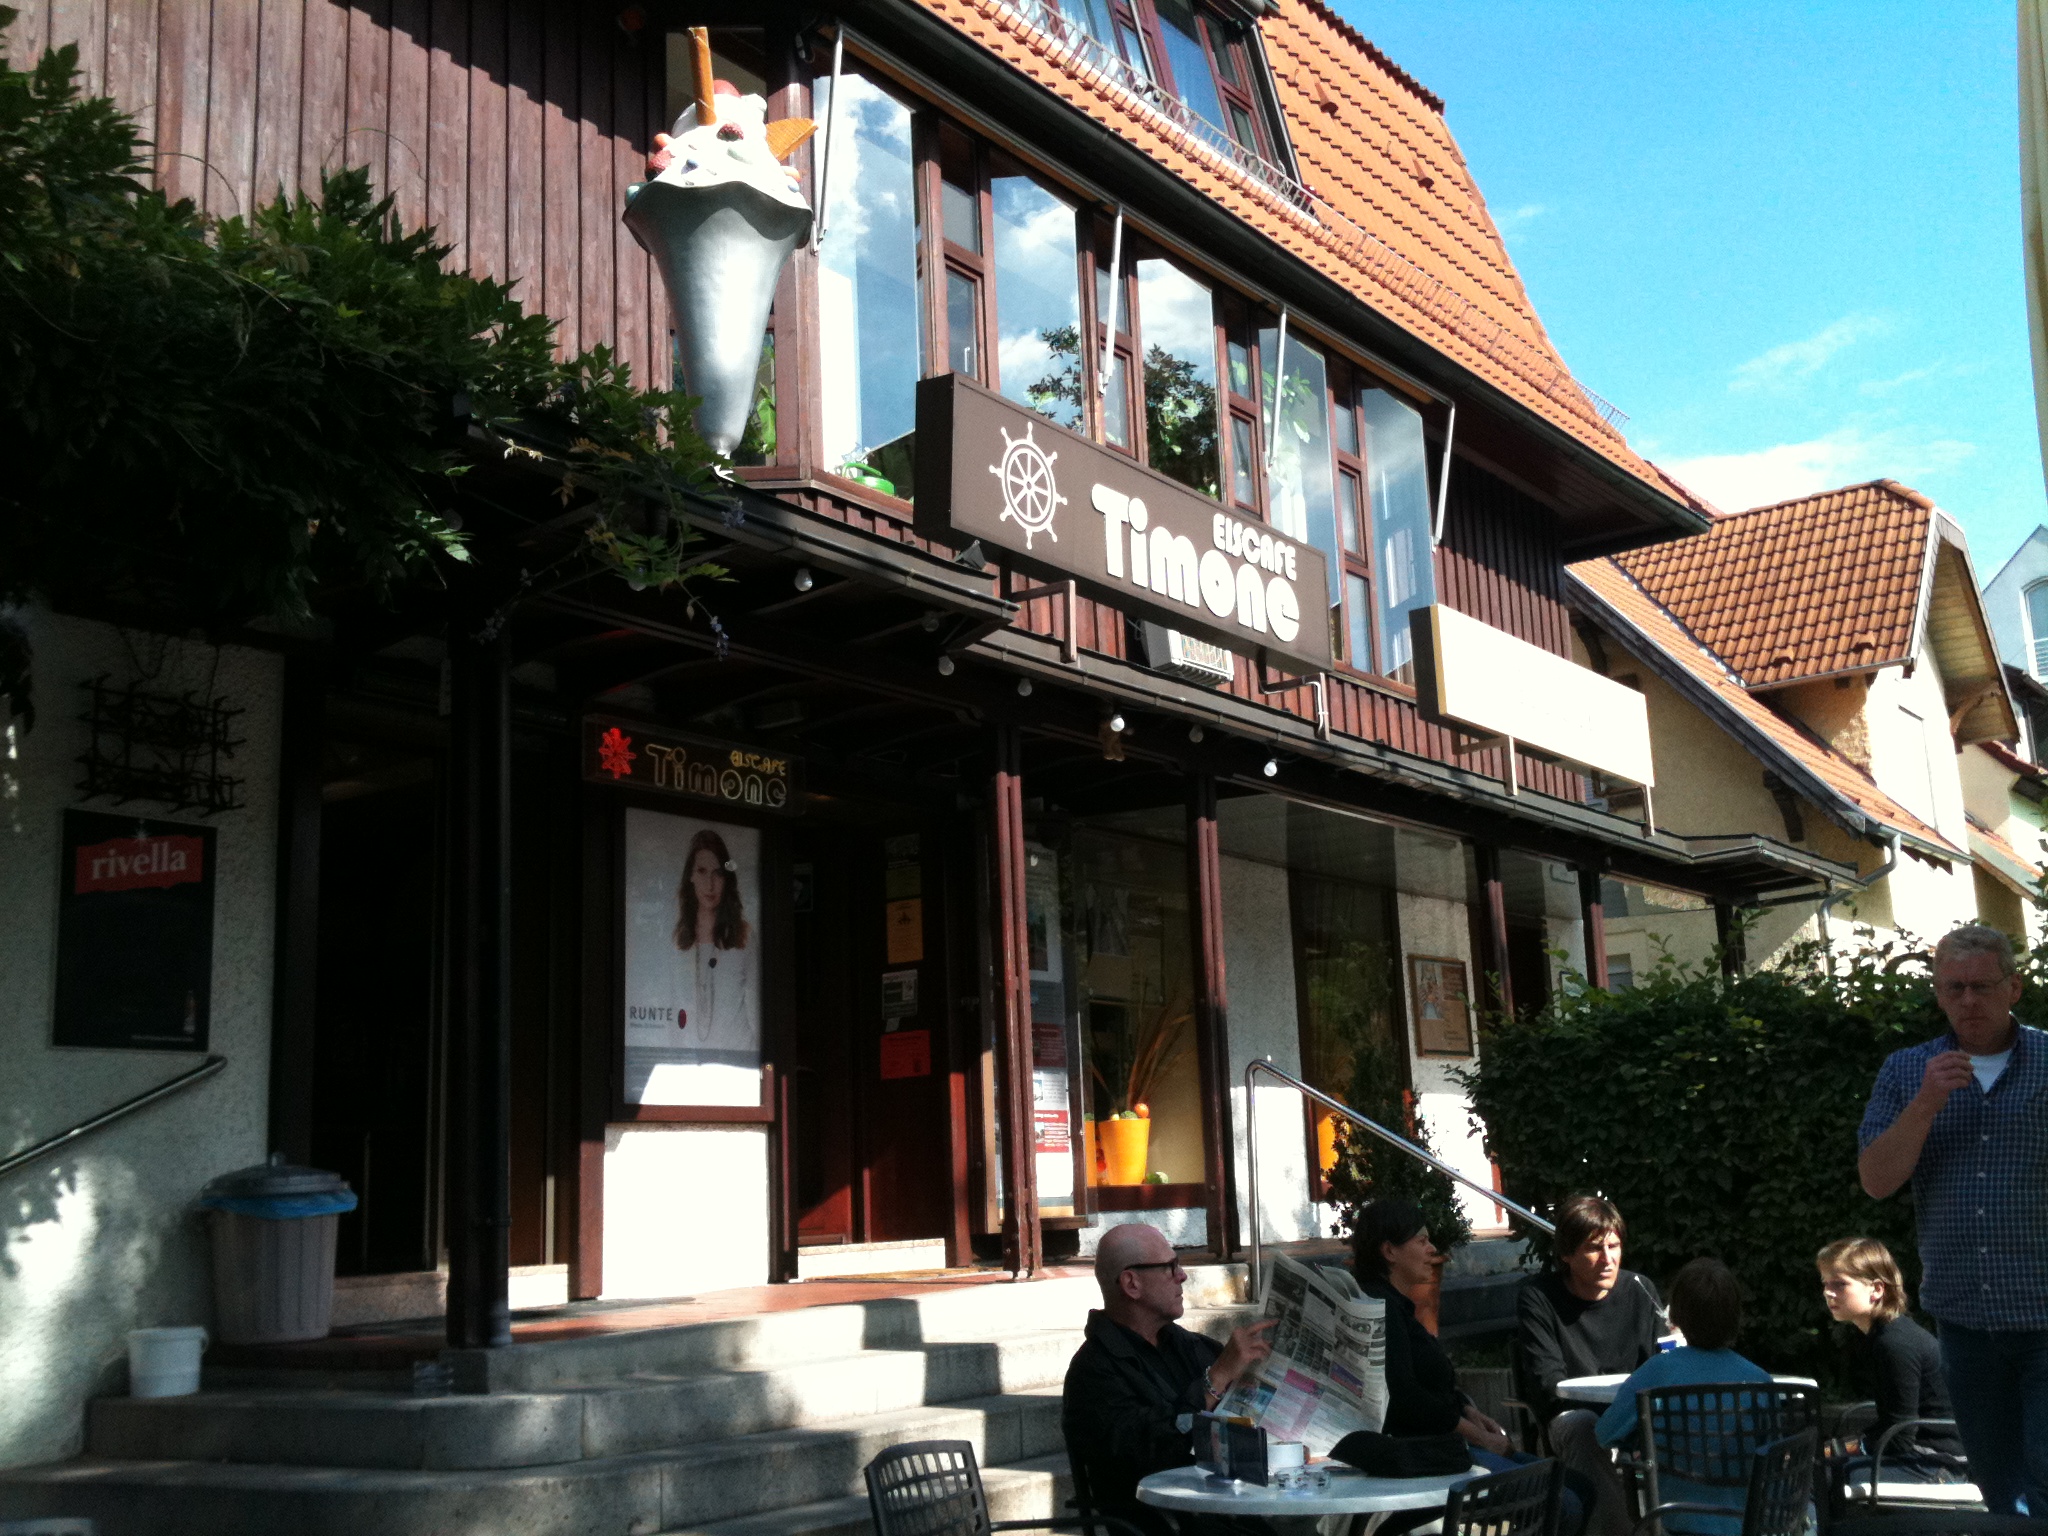 Bild 2 Eiscafe Timone in Stuttgart